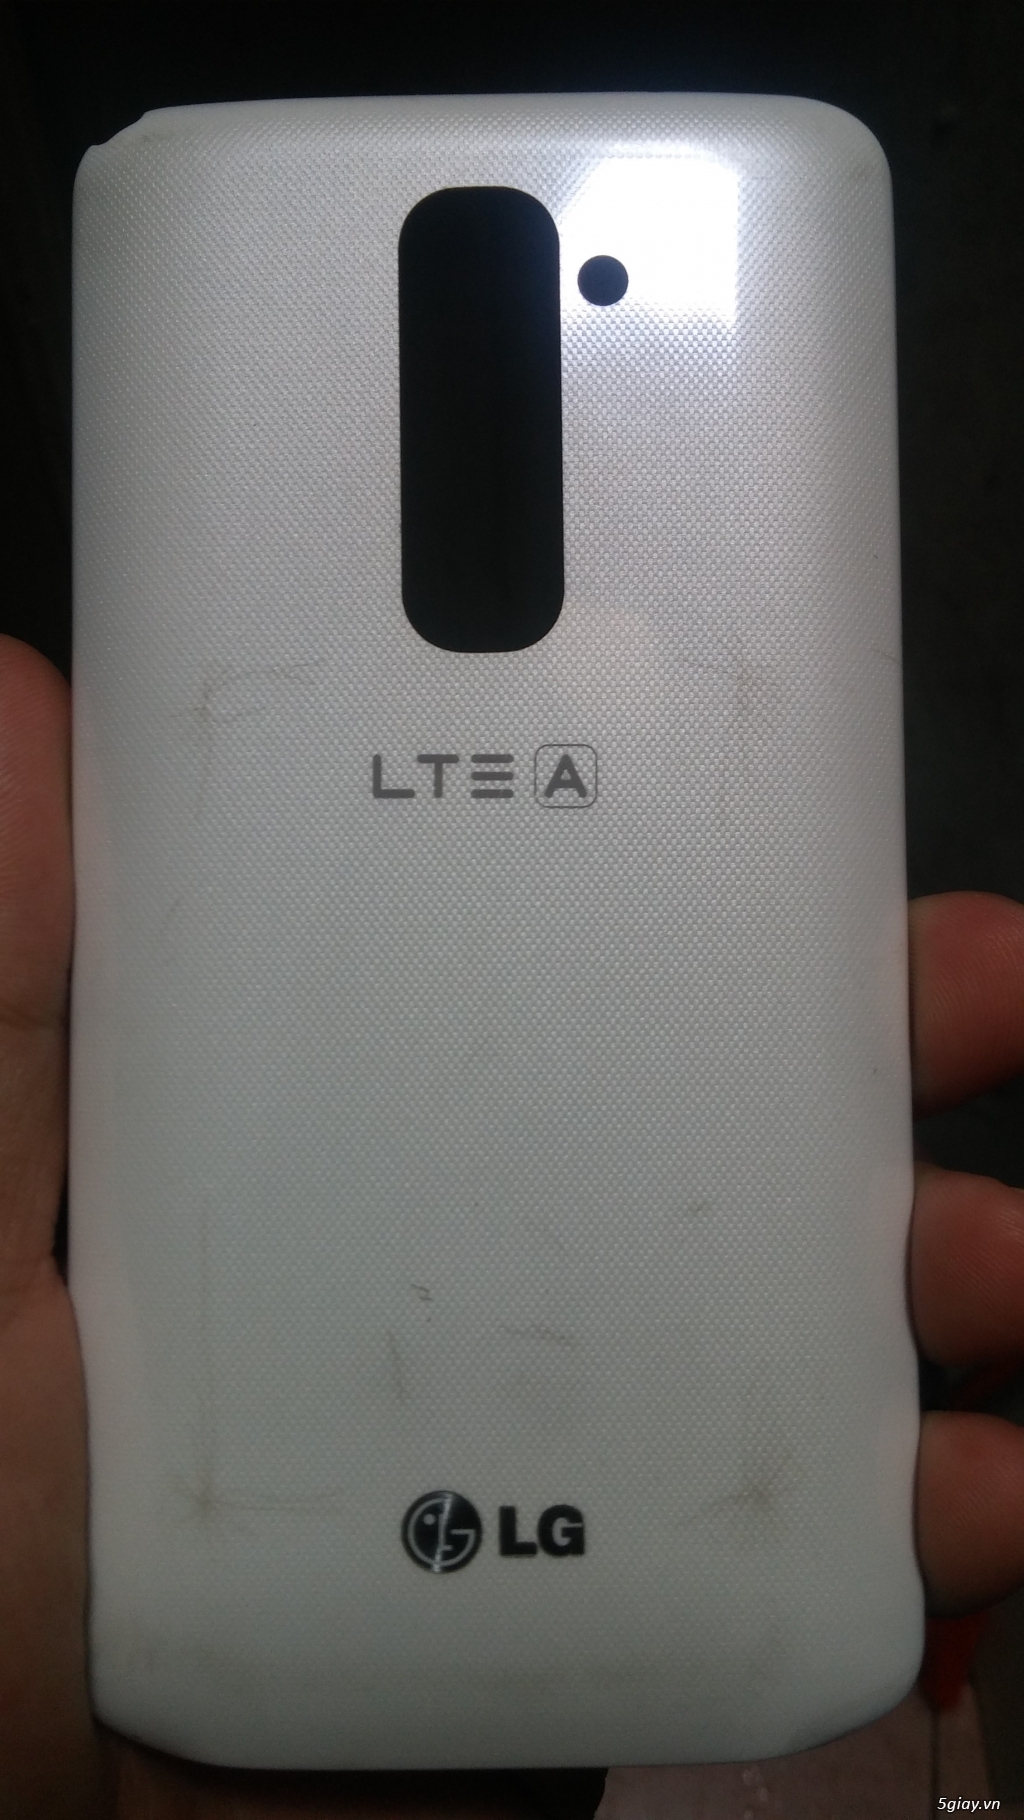 LG G2 F320s màu trắng - 4